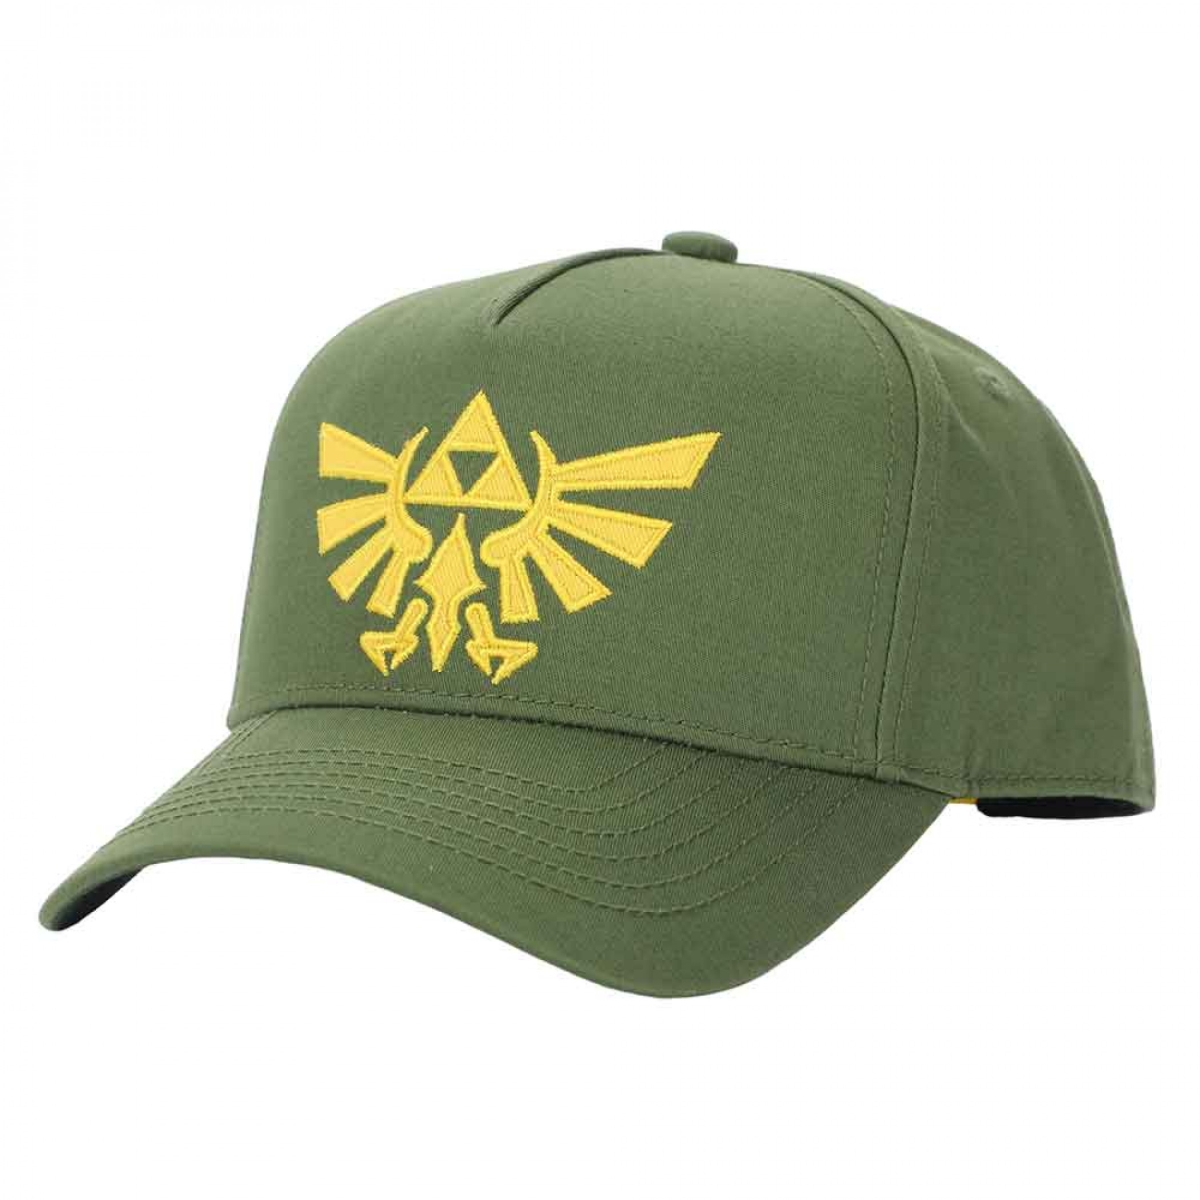 Picture of Zelda 875736 The Legend of Zelda Hyrule Gold Crest Embroidered Hat